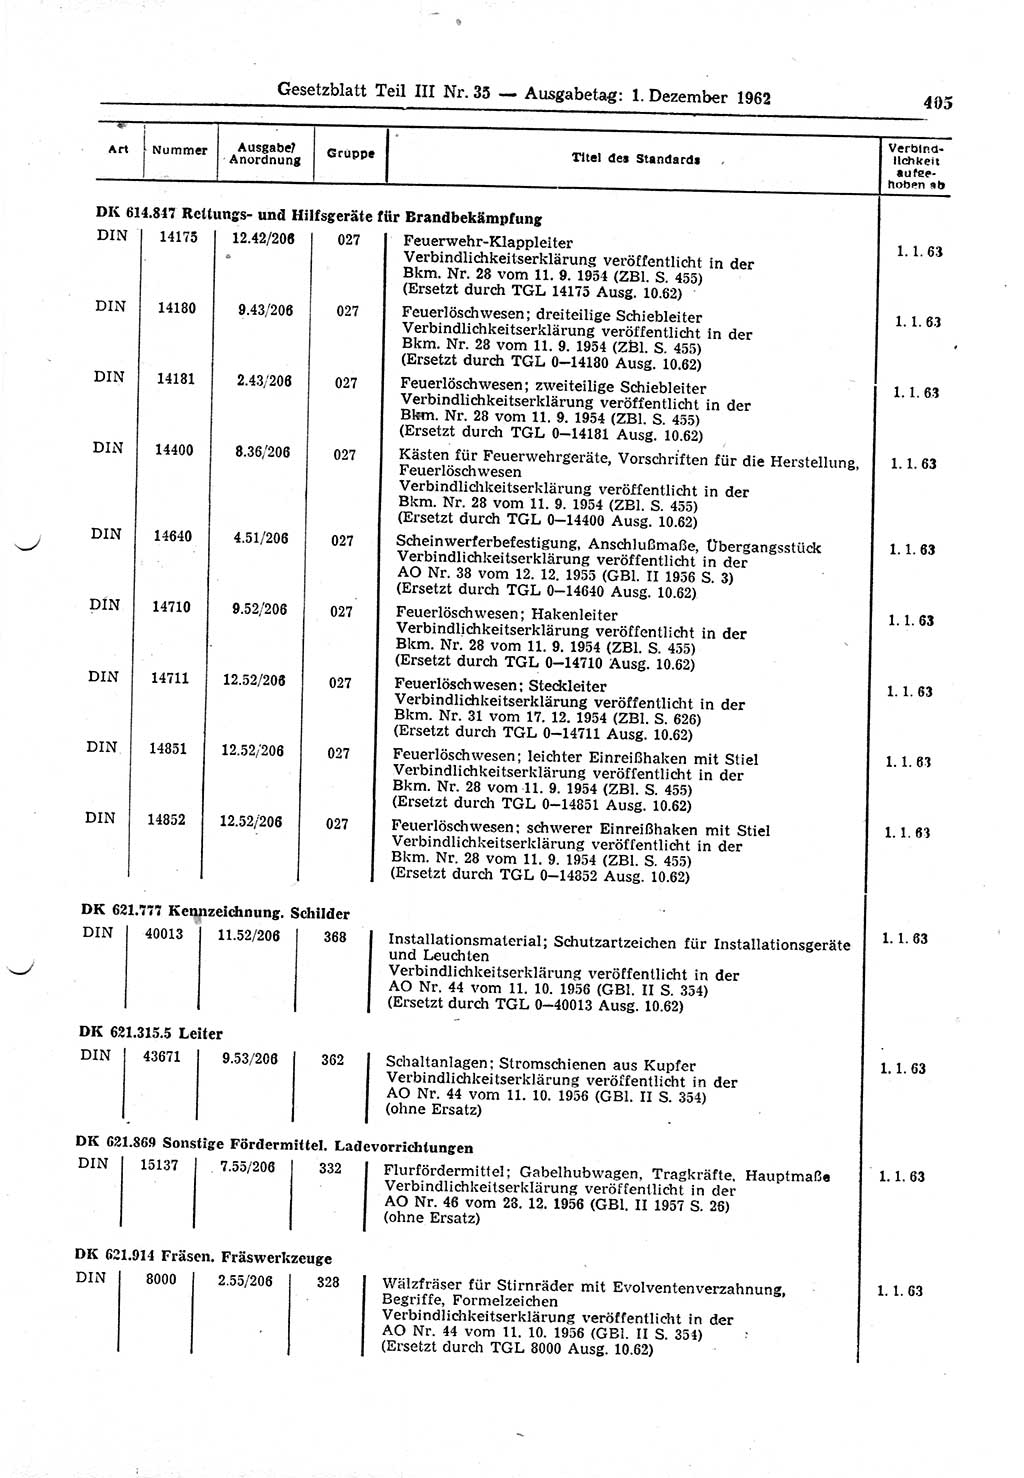 Gesetzblatt (GBl.) der Deutschen Demokratischen Republik (DDR) Teil ⅠⅠⅠ 1962, Seite 405 (GBl. DDR ⅠⅠⅠ 1962, S. 405)